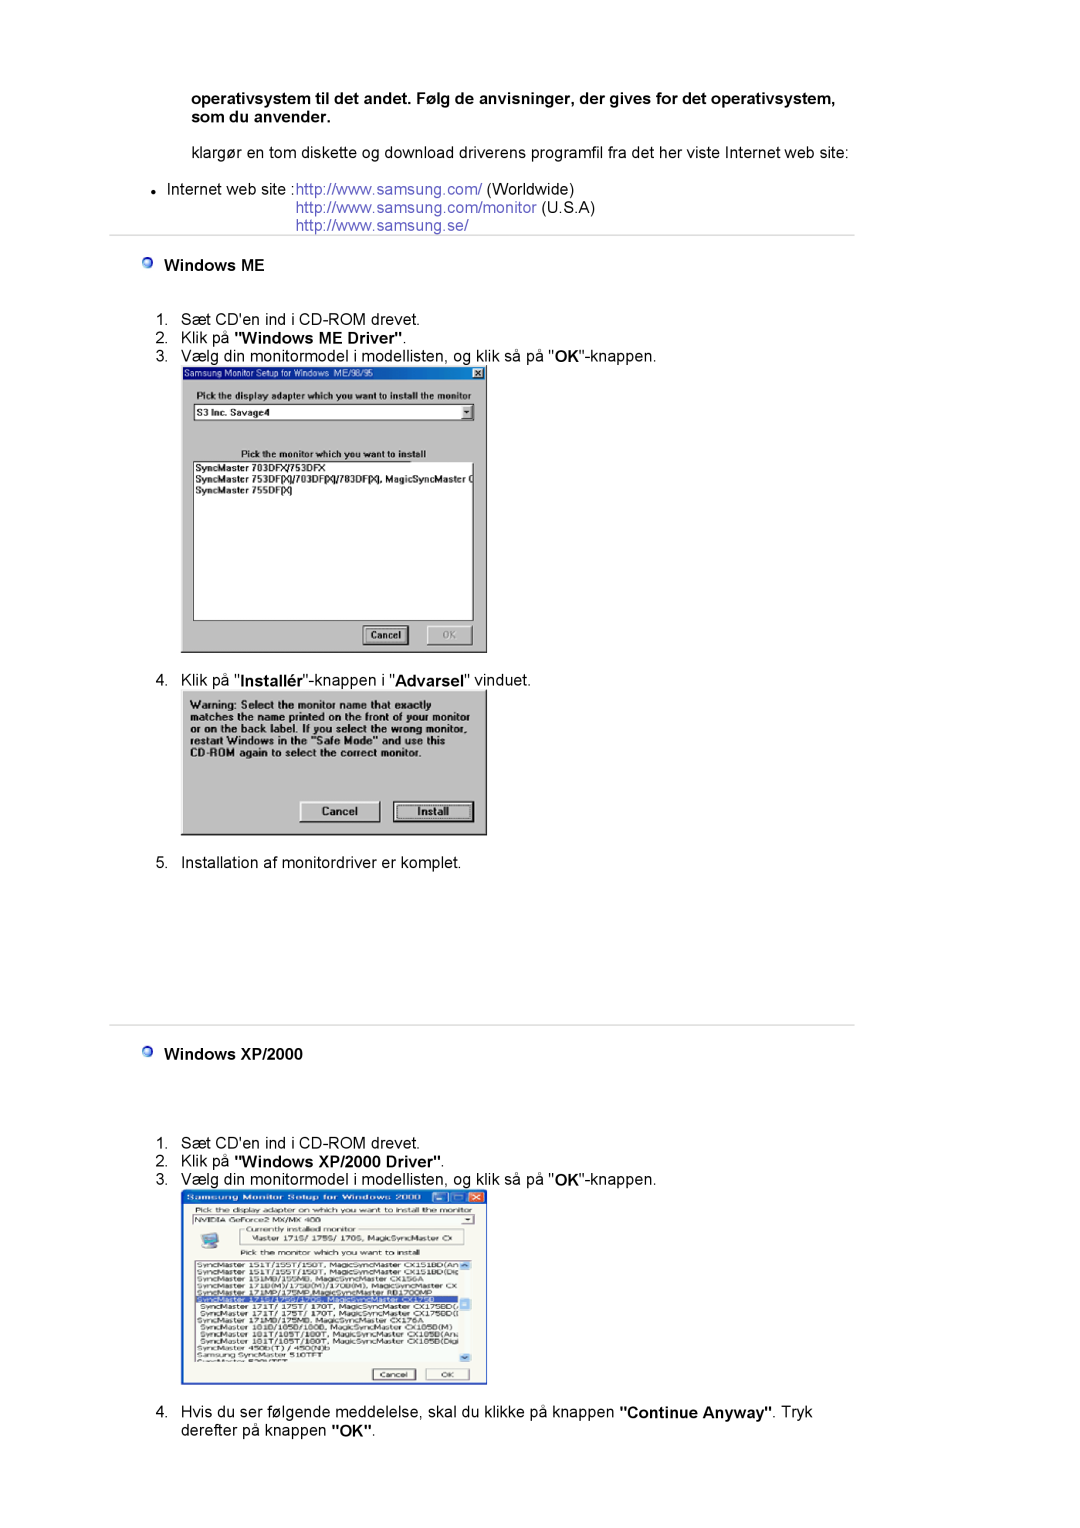 Samsung LS17MJVKS/EDC manual Klik på Windows ME Driver, Klik på Windows XP/2000 Driver 